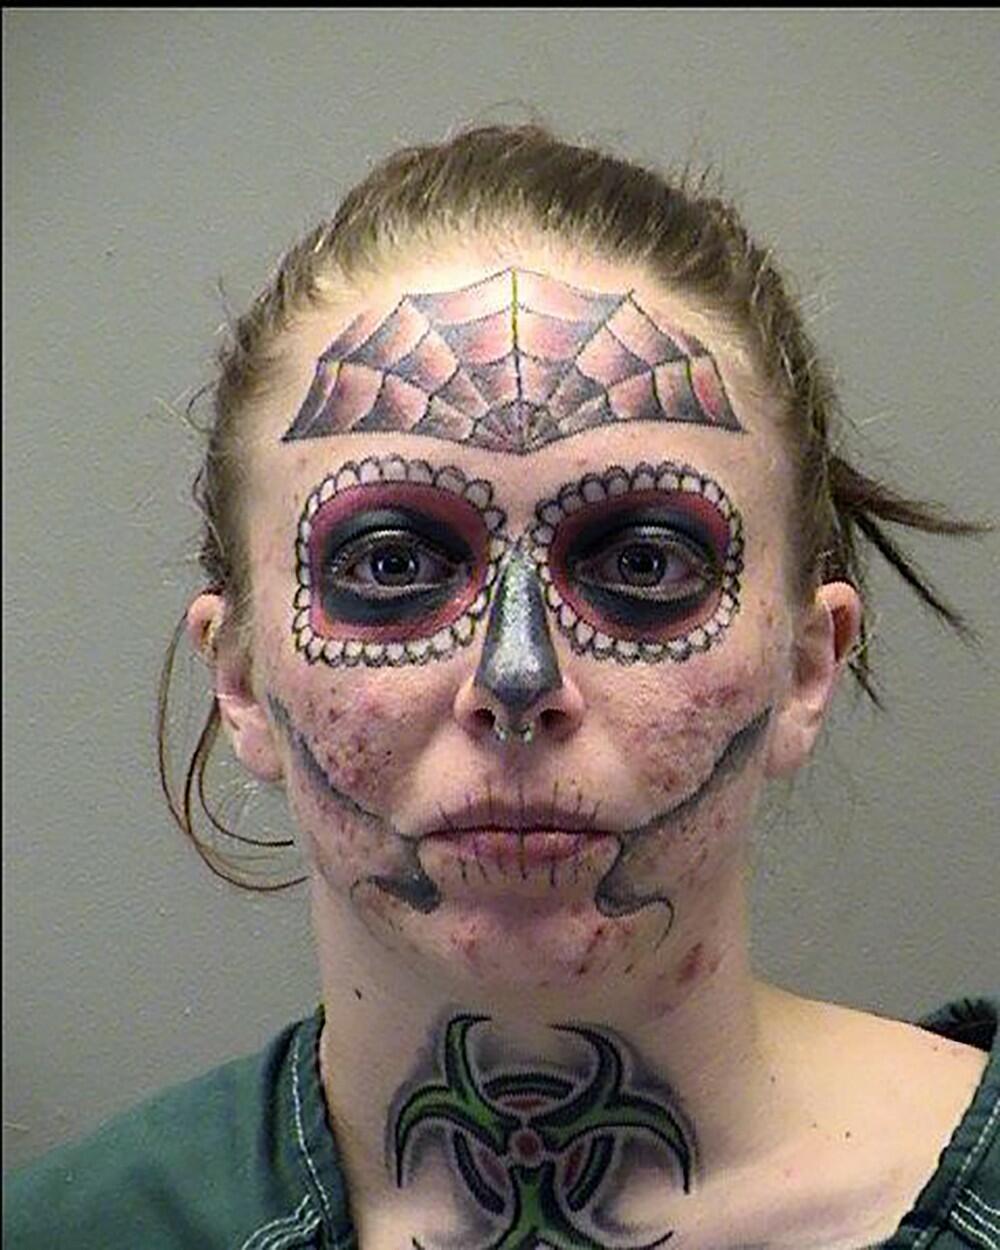 Alisa Zebraski imala je jezive tetovaže po licu  